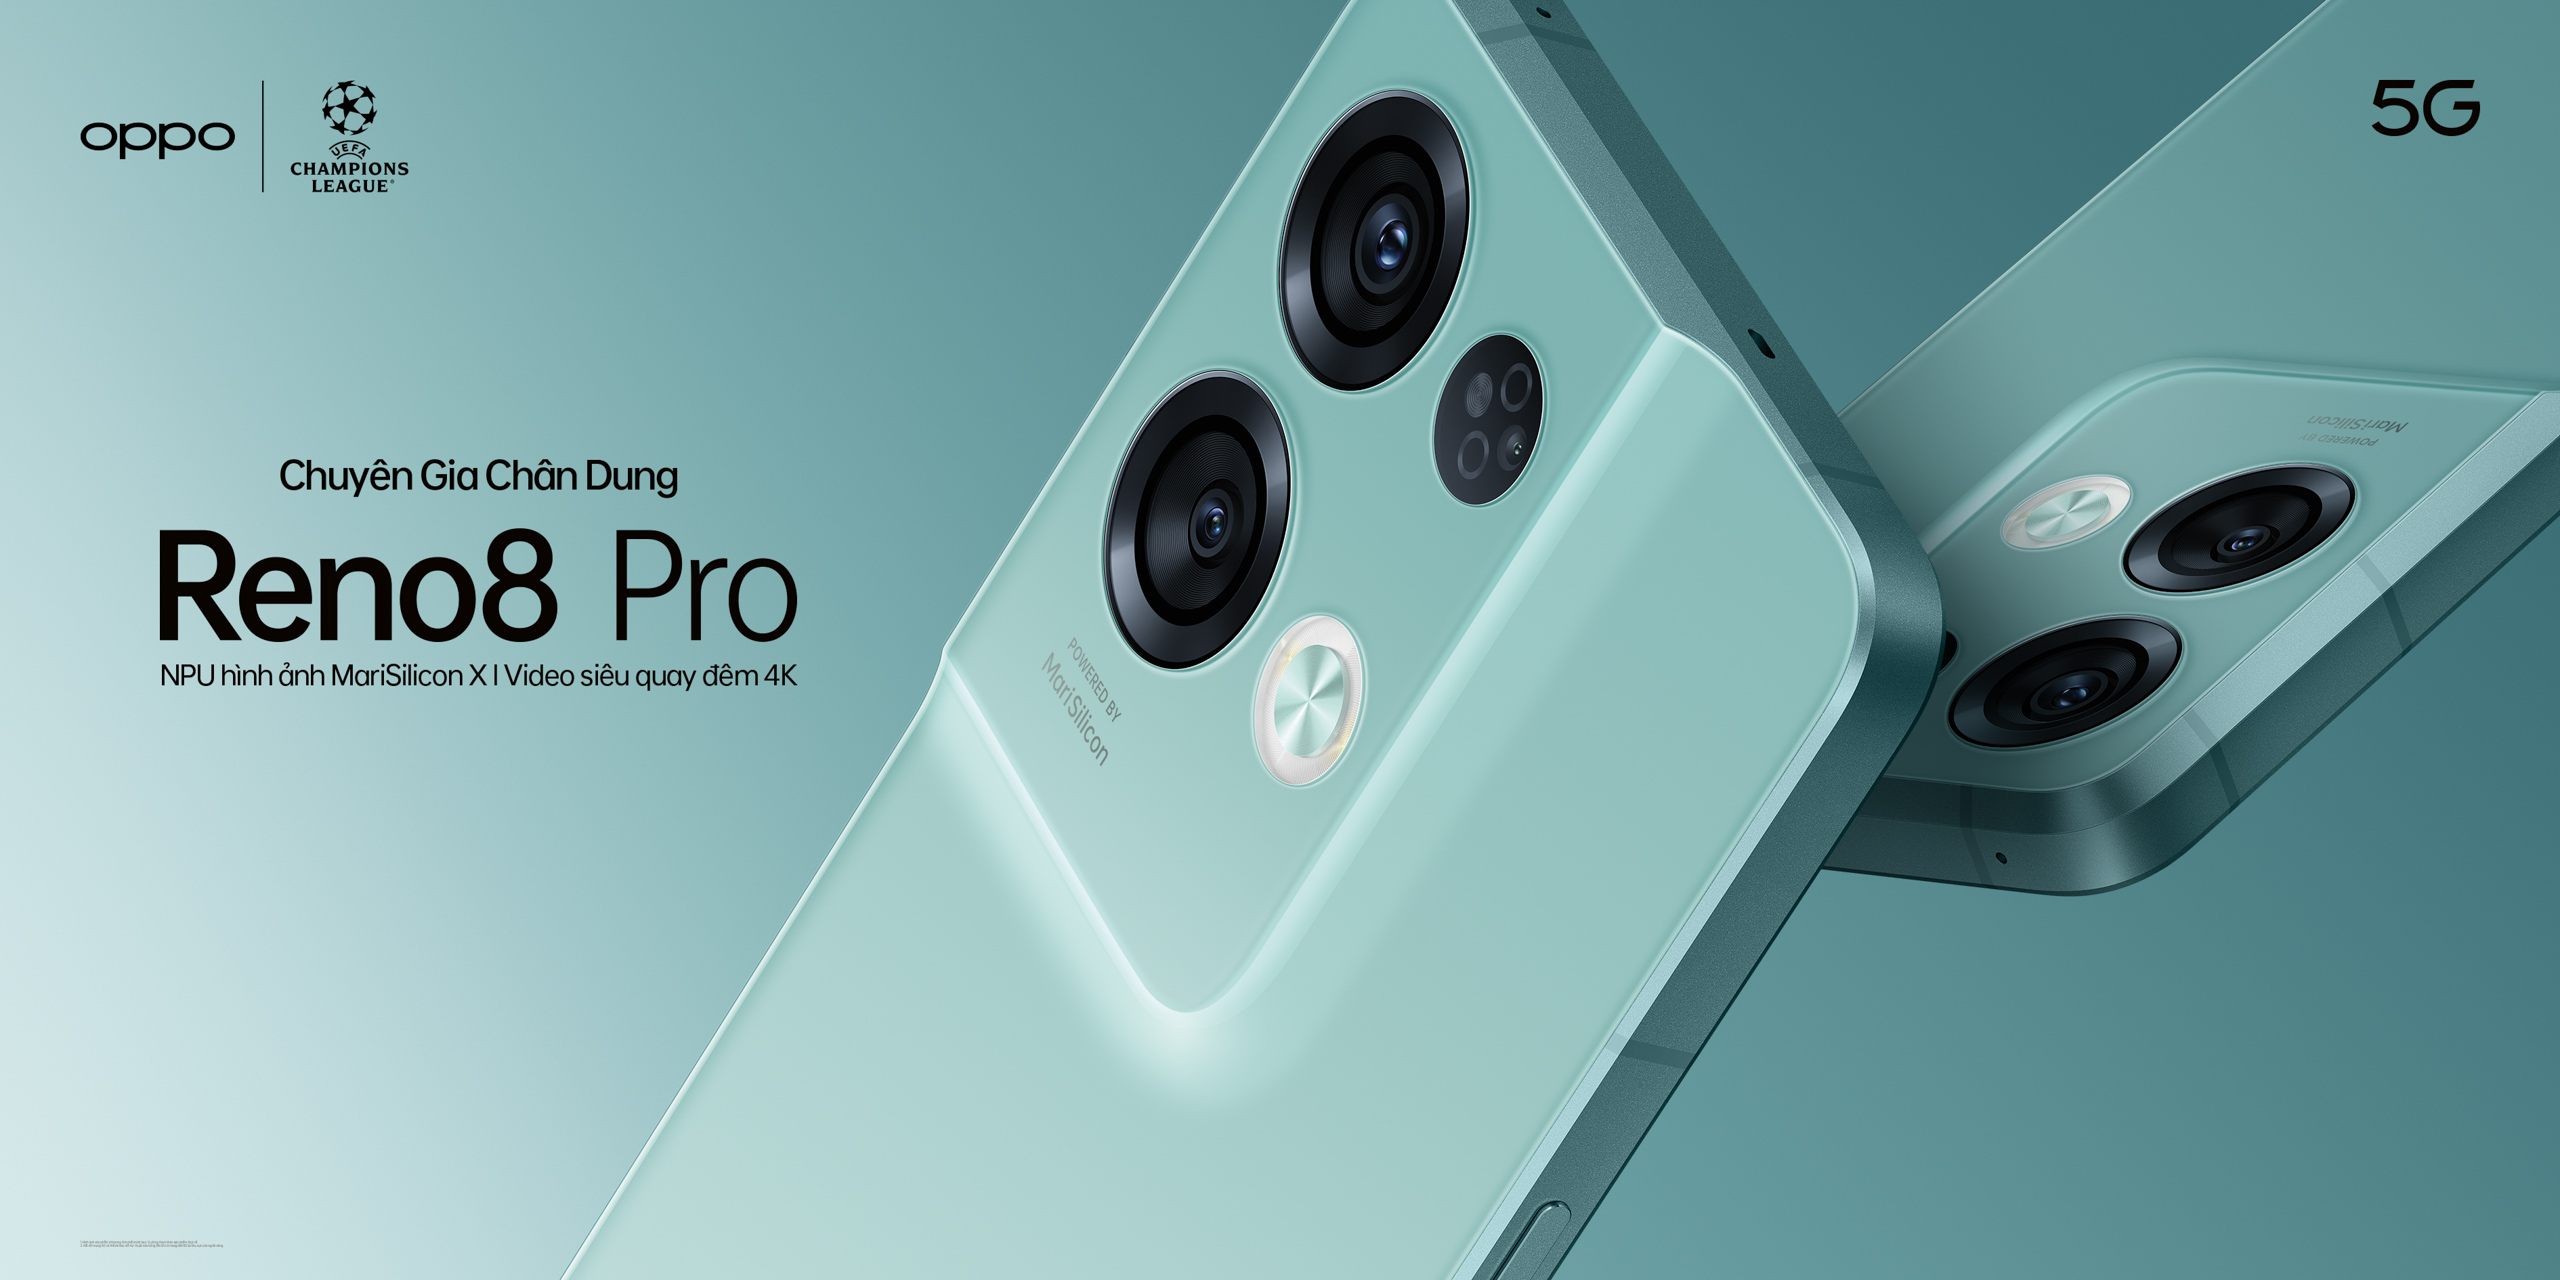 OPPO Reno8 Pro 5G là một chiếc điện thoại thông minh thực sự đáng để có. Với khả năng chụp ảnh chuyên nghiệp và hiệu suất mạnh mẽ, chiếc điện thoại này sẽ là người bạn đồng hành hoàn hảo cho công việc và giải trí của bạn.